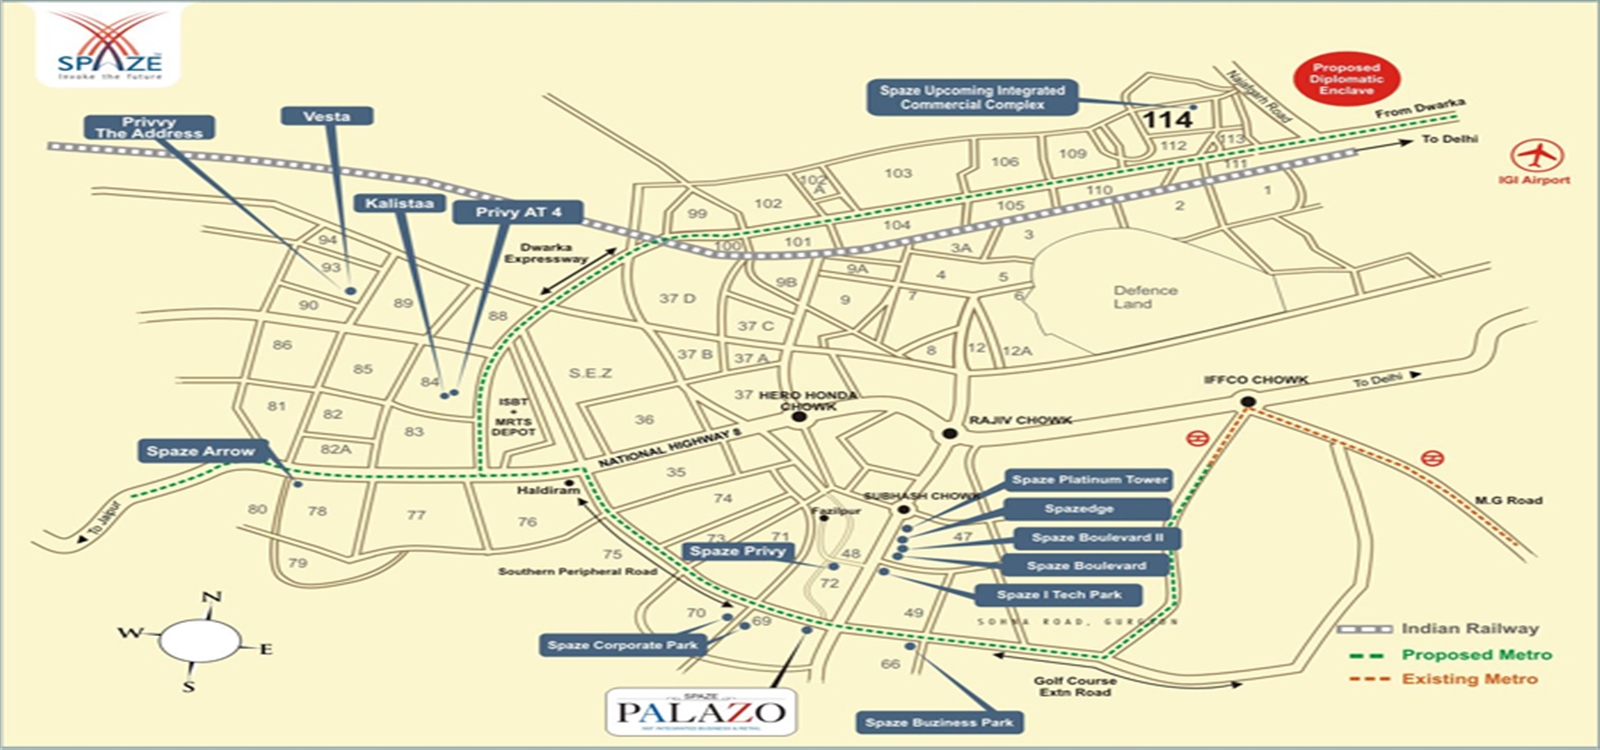 Spaze Palazo Location Map